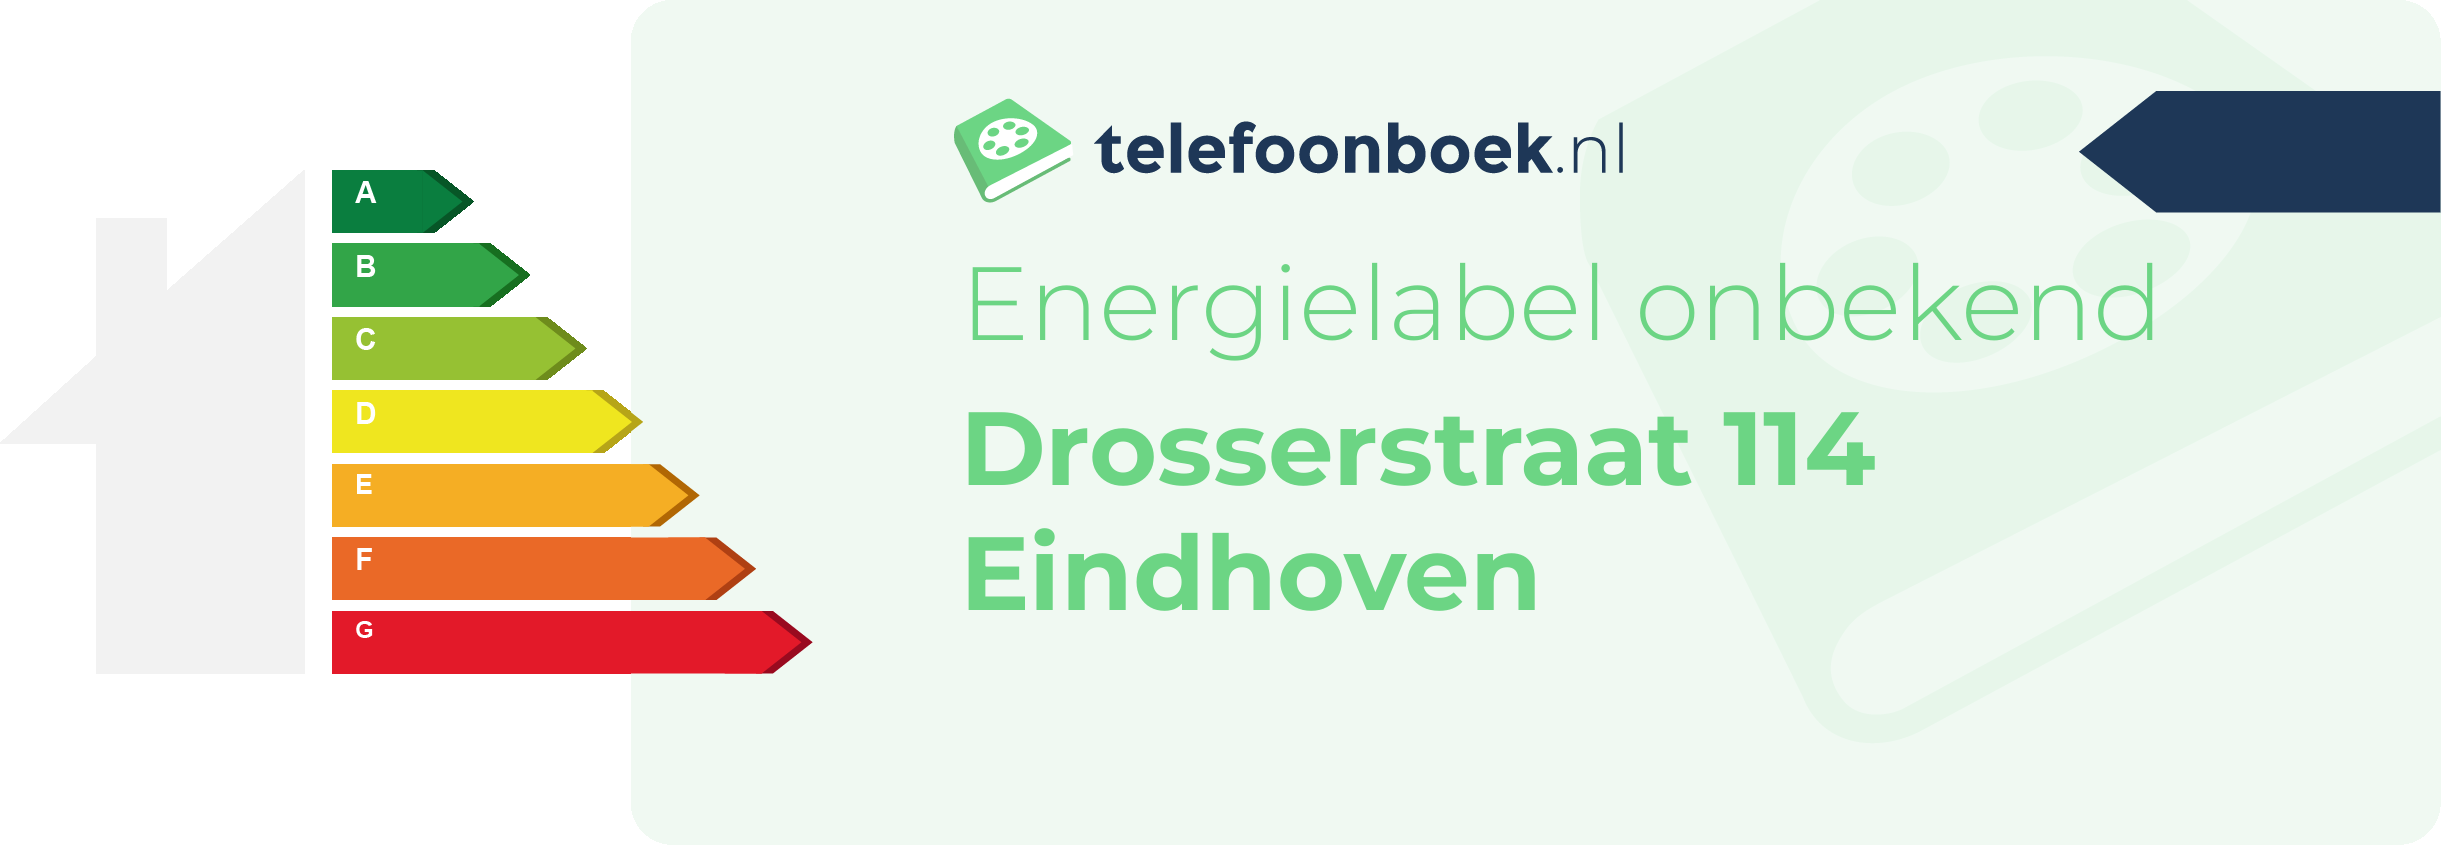 Energielabel Drosserstraat 114 Eindhoven